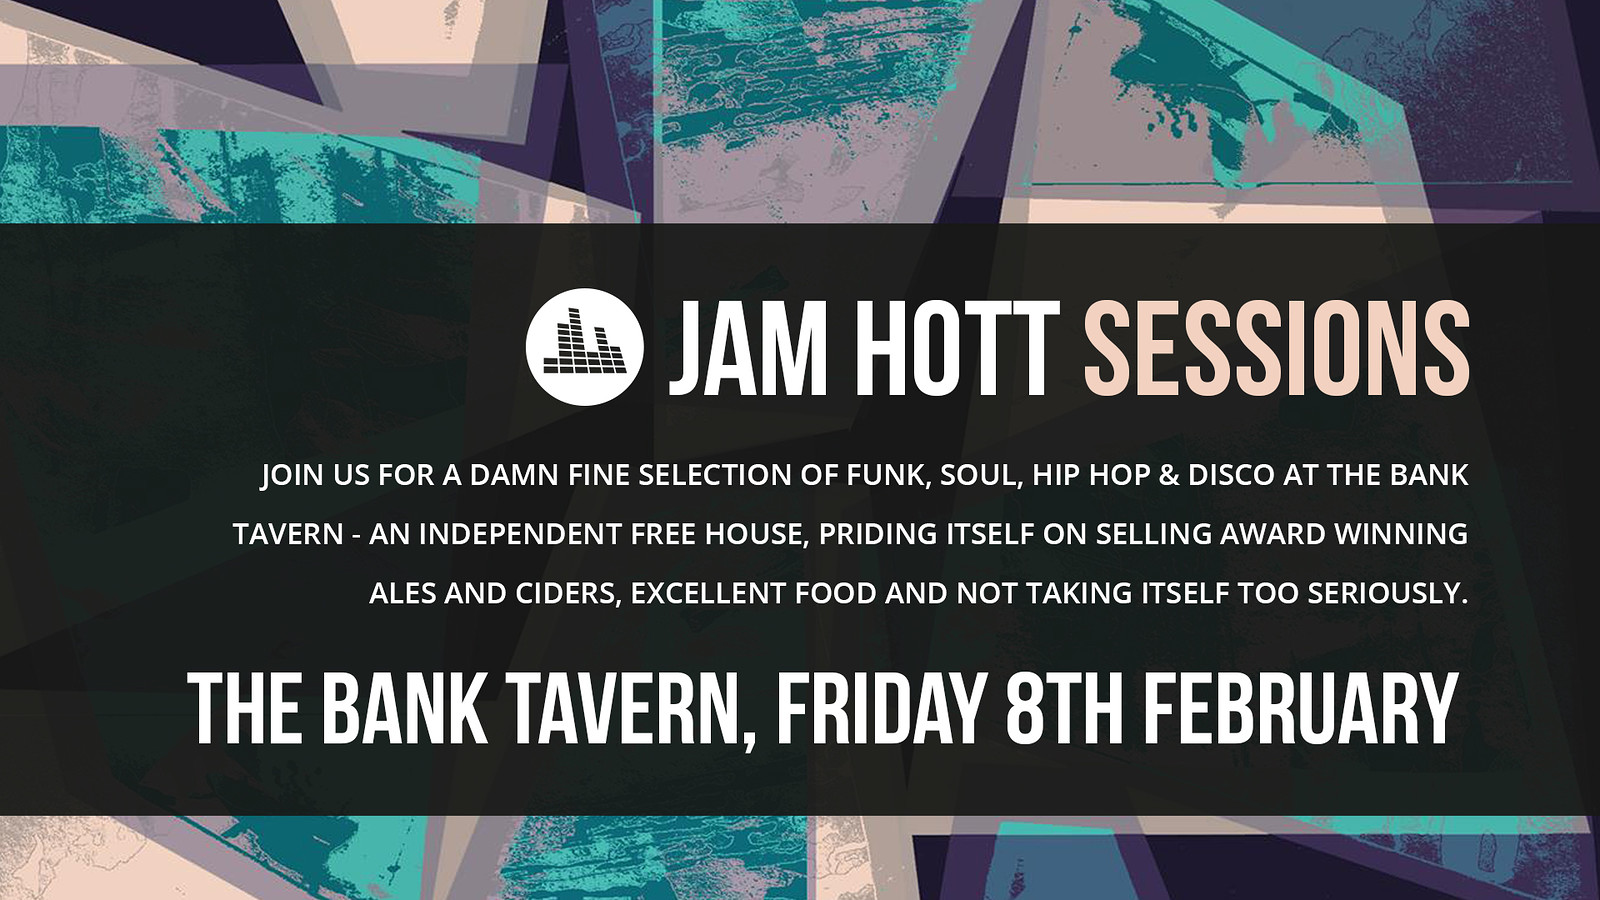 Jam Hott Sessions at The Bank Tavern at Bank Tavern